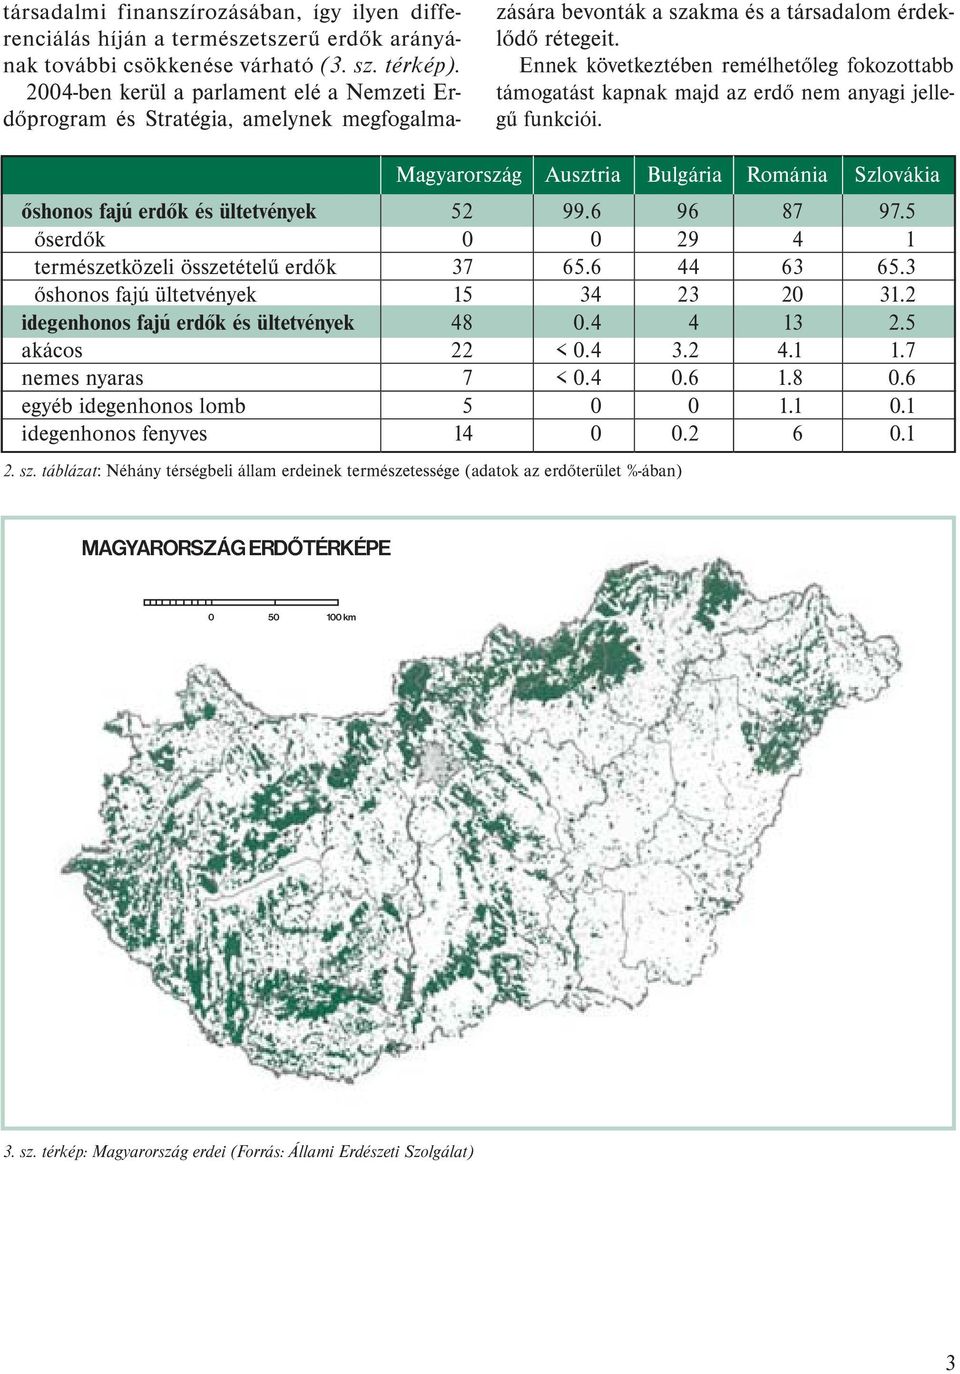 Ennek következtében remélhetőleg fokozottabb támogatást kapnak majd az erdő nem anyagi jellegű funkciói. Magyarország Ausztria Bulgária Románia Szlovákia őshonos fajú erdők és ültetvények 52 99.